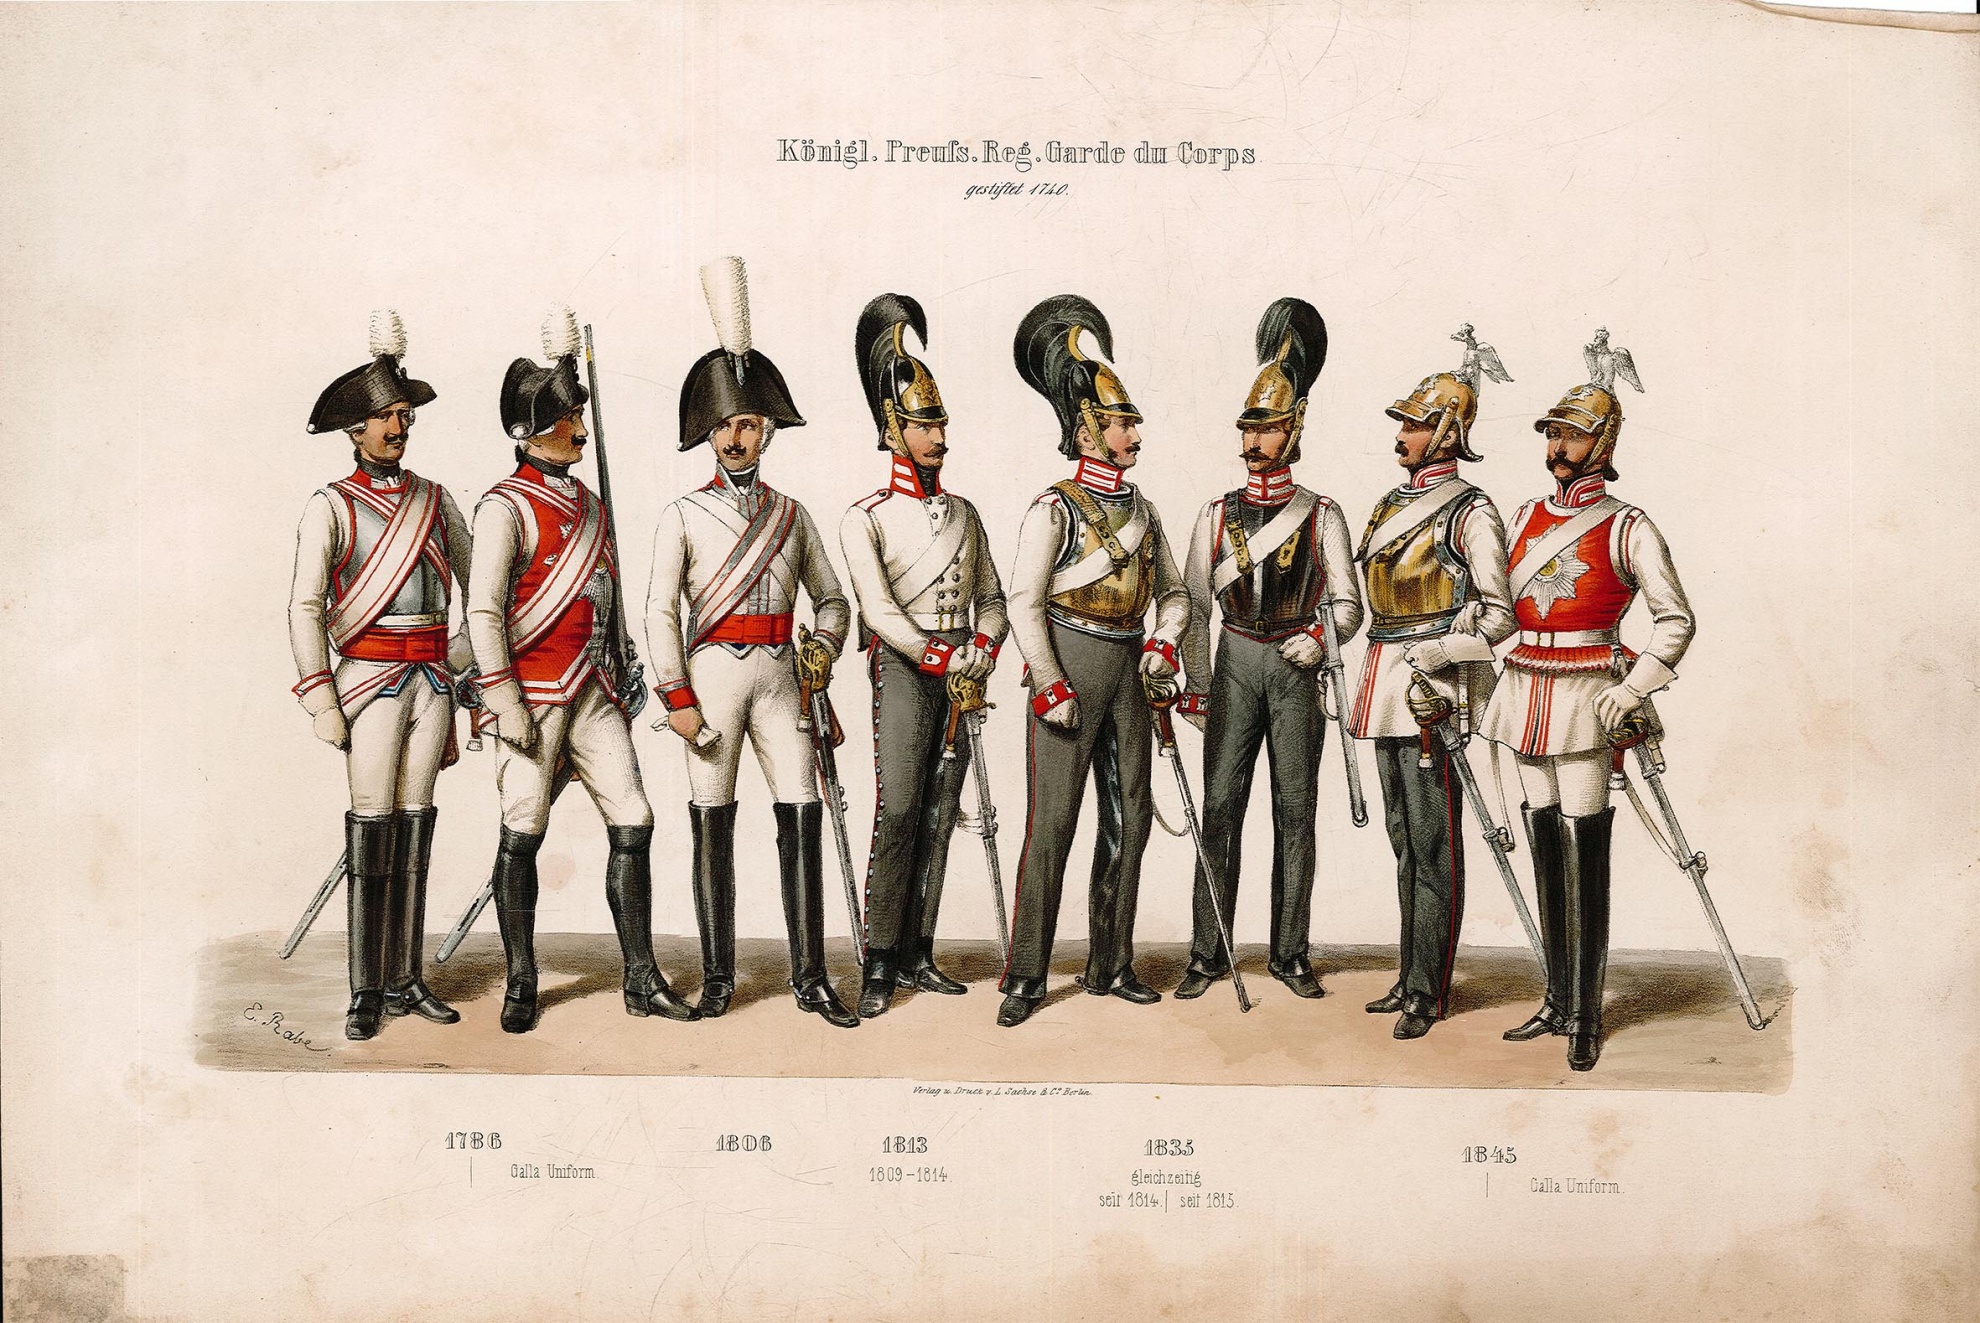 Königlich Preussische Regiment Garde di Corps (Museum Wolmirstedt RR-F)